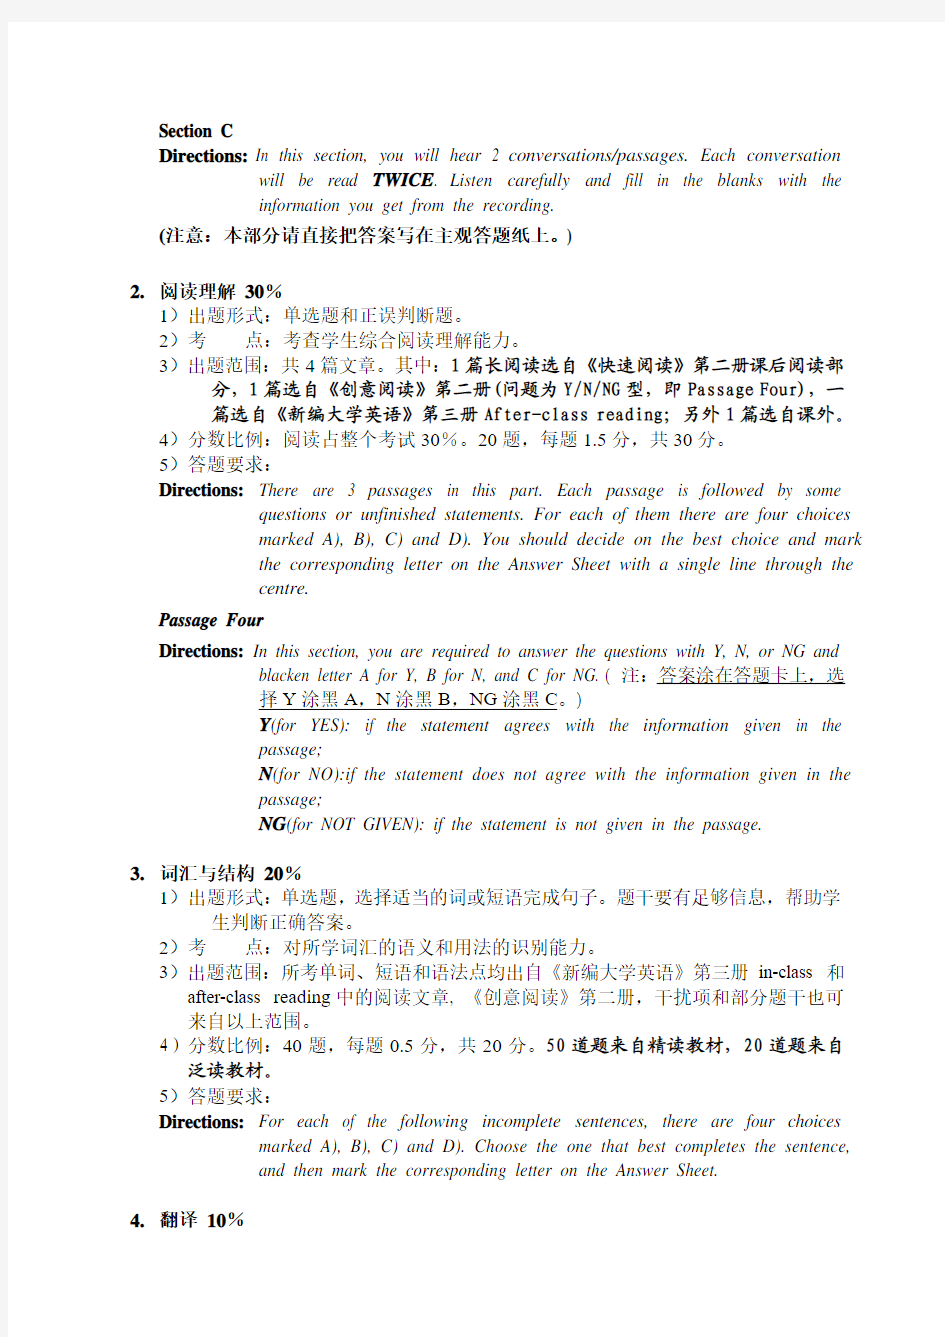 武汉大学2013级大学英语2期末考试说明